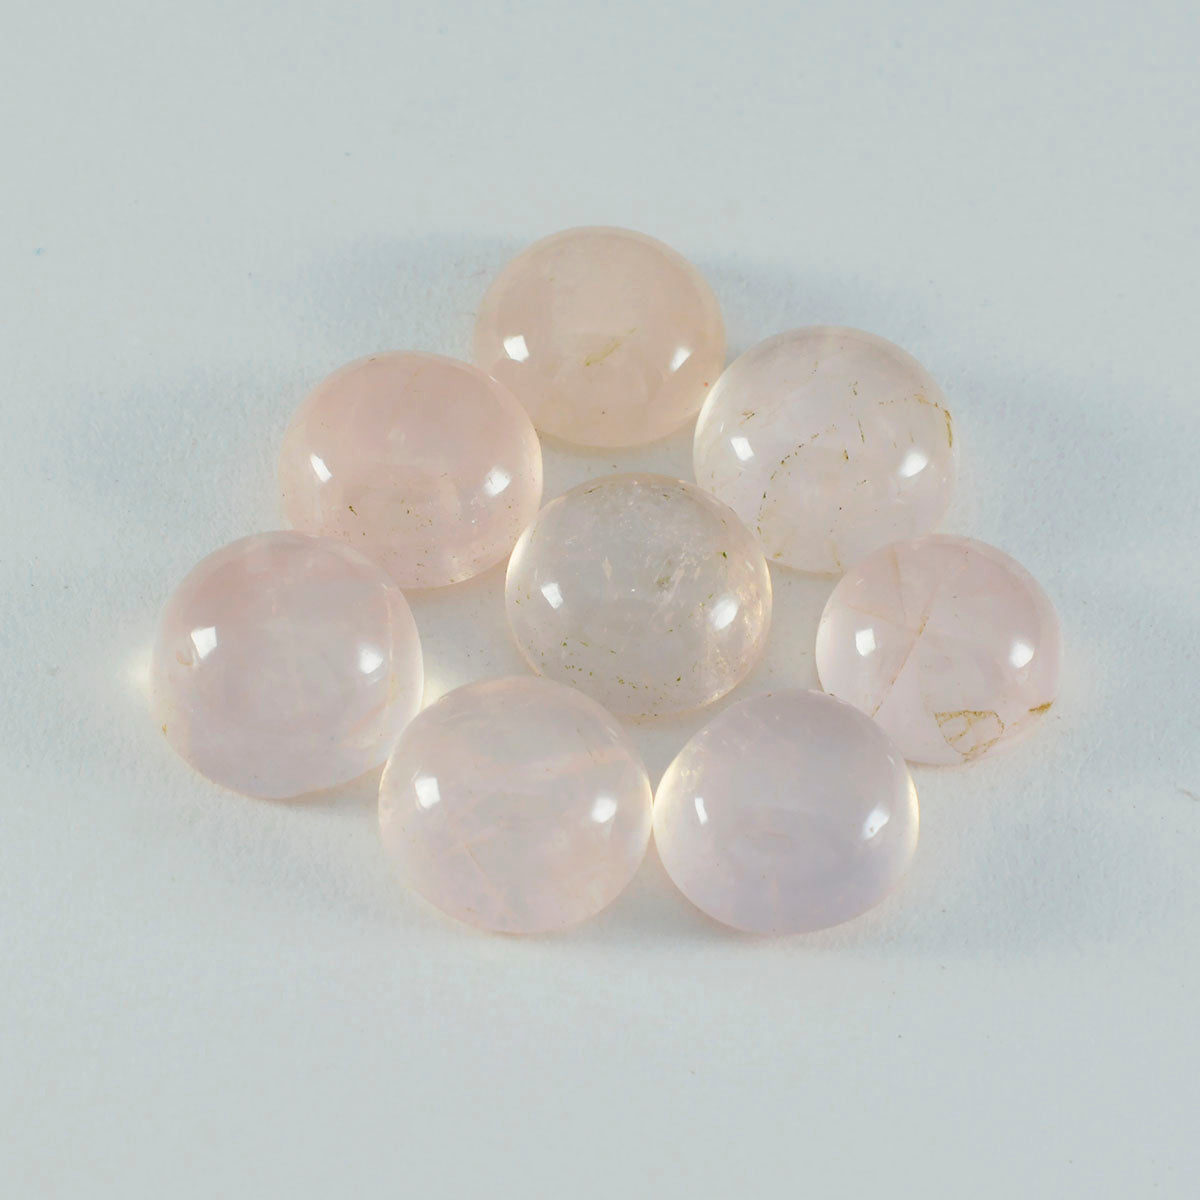 riyogems 1 шт. кабошон из розового кварца 10x10 мм круглой формы, привлекательные качественные драгоценные камни